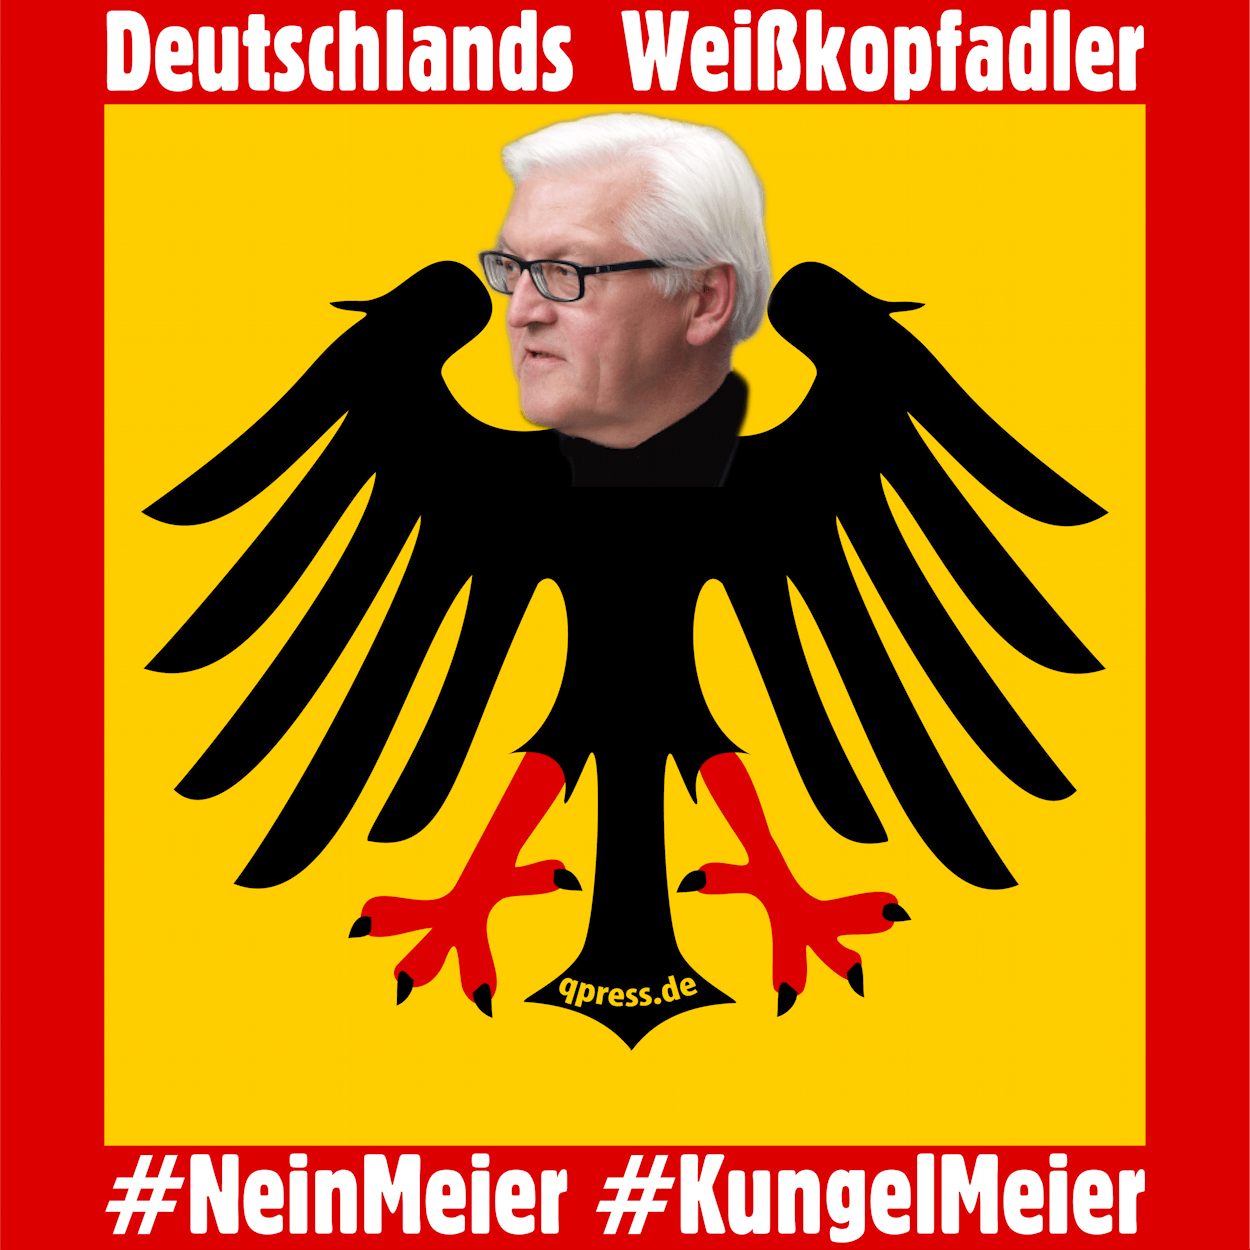 Germanys next Weisskopfadler frank walter Steinmeier als Praesident 2017 NeinMeier-02